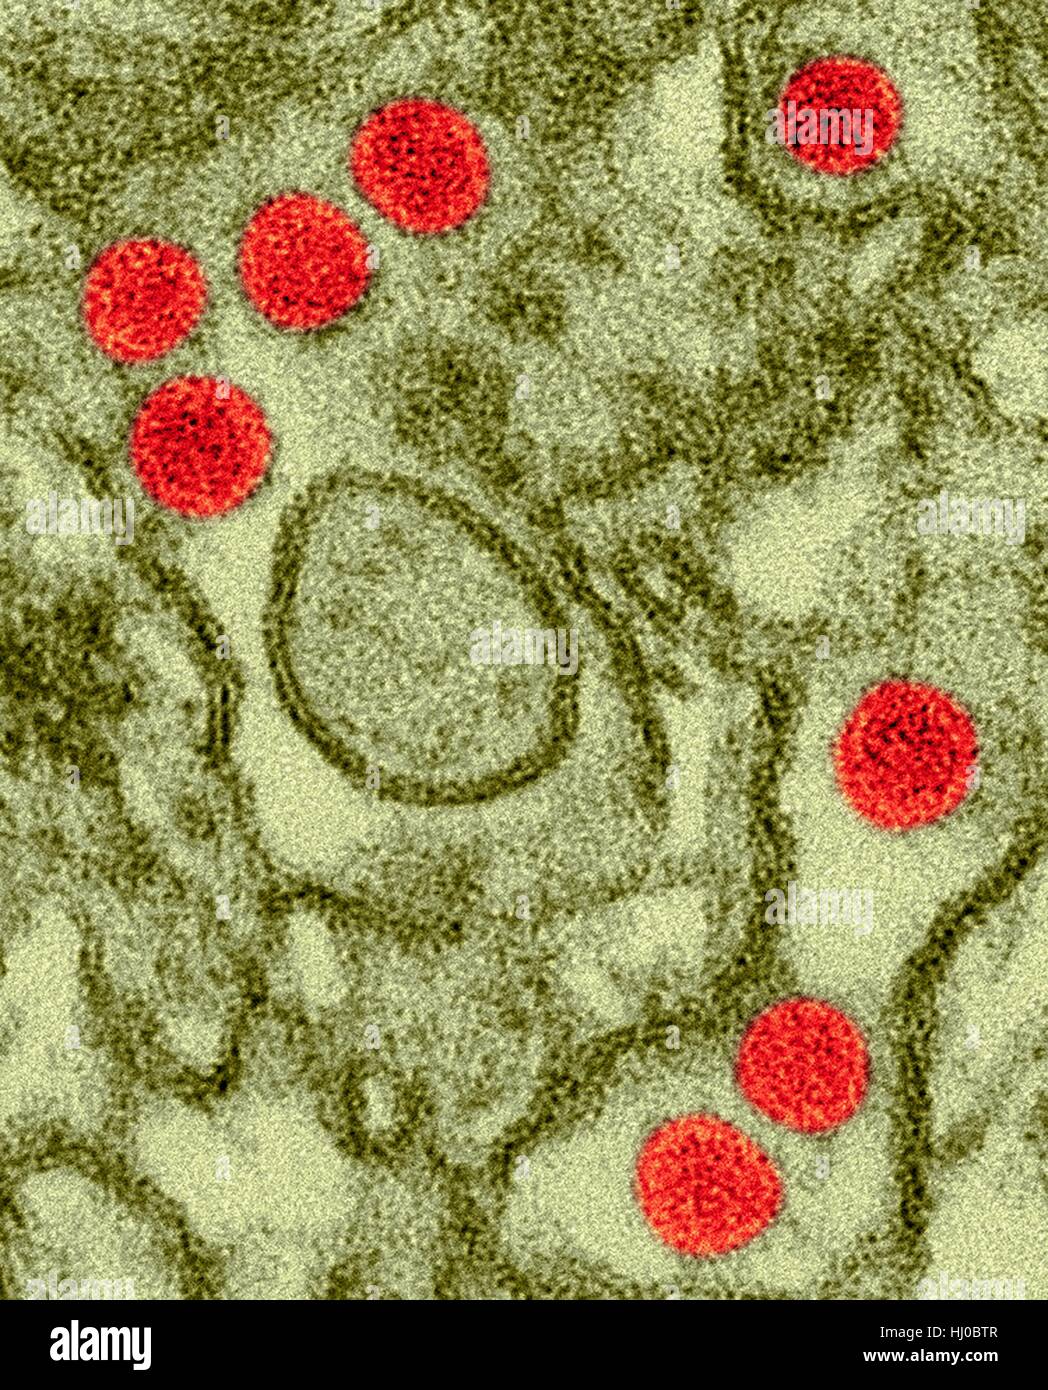 Color micrógrafo electrónico de transmisión (TEM) de partículas del virus Zika (rojo) aislados en células epiteliales renales (células Vero E6).Los virus Zika denso núcleo rodeado de sobres tamaño (40nm).Zika virus de ARN (ácido ribonucleico) de virus de la familia Flaviviridae provoca fiebre Zika,o enfermedad Zika.Aedes Foto de stock